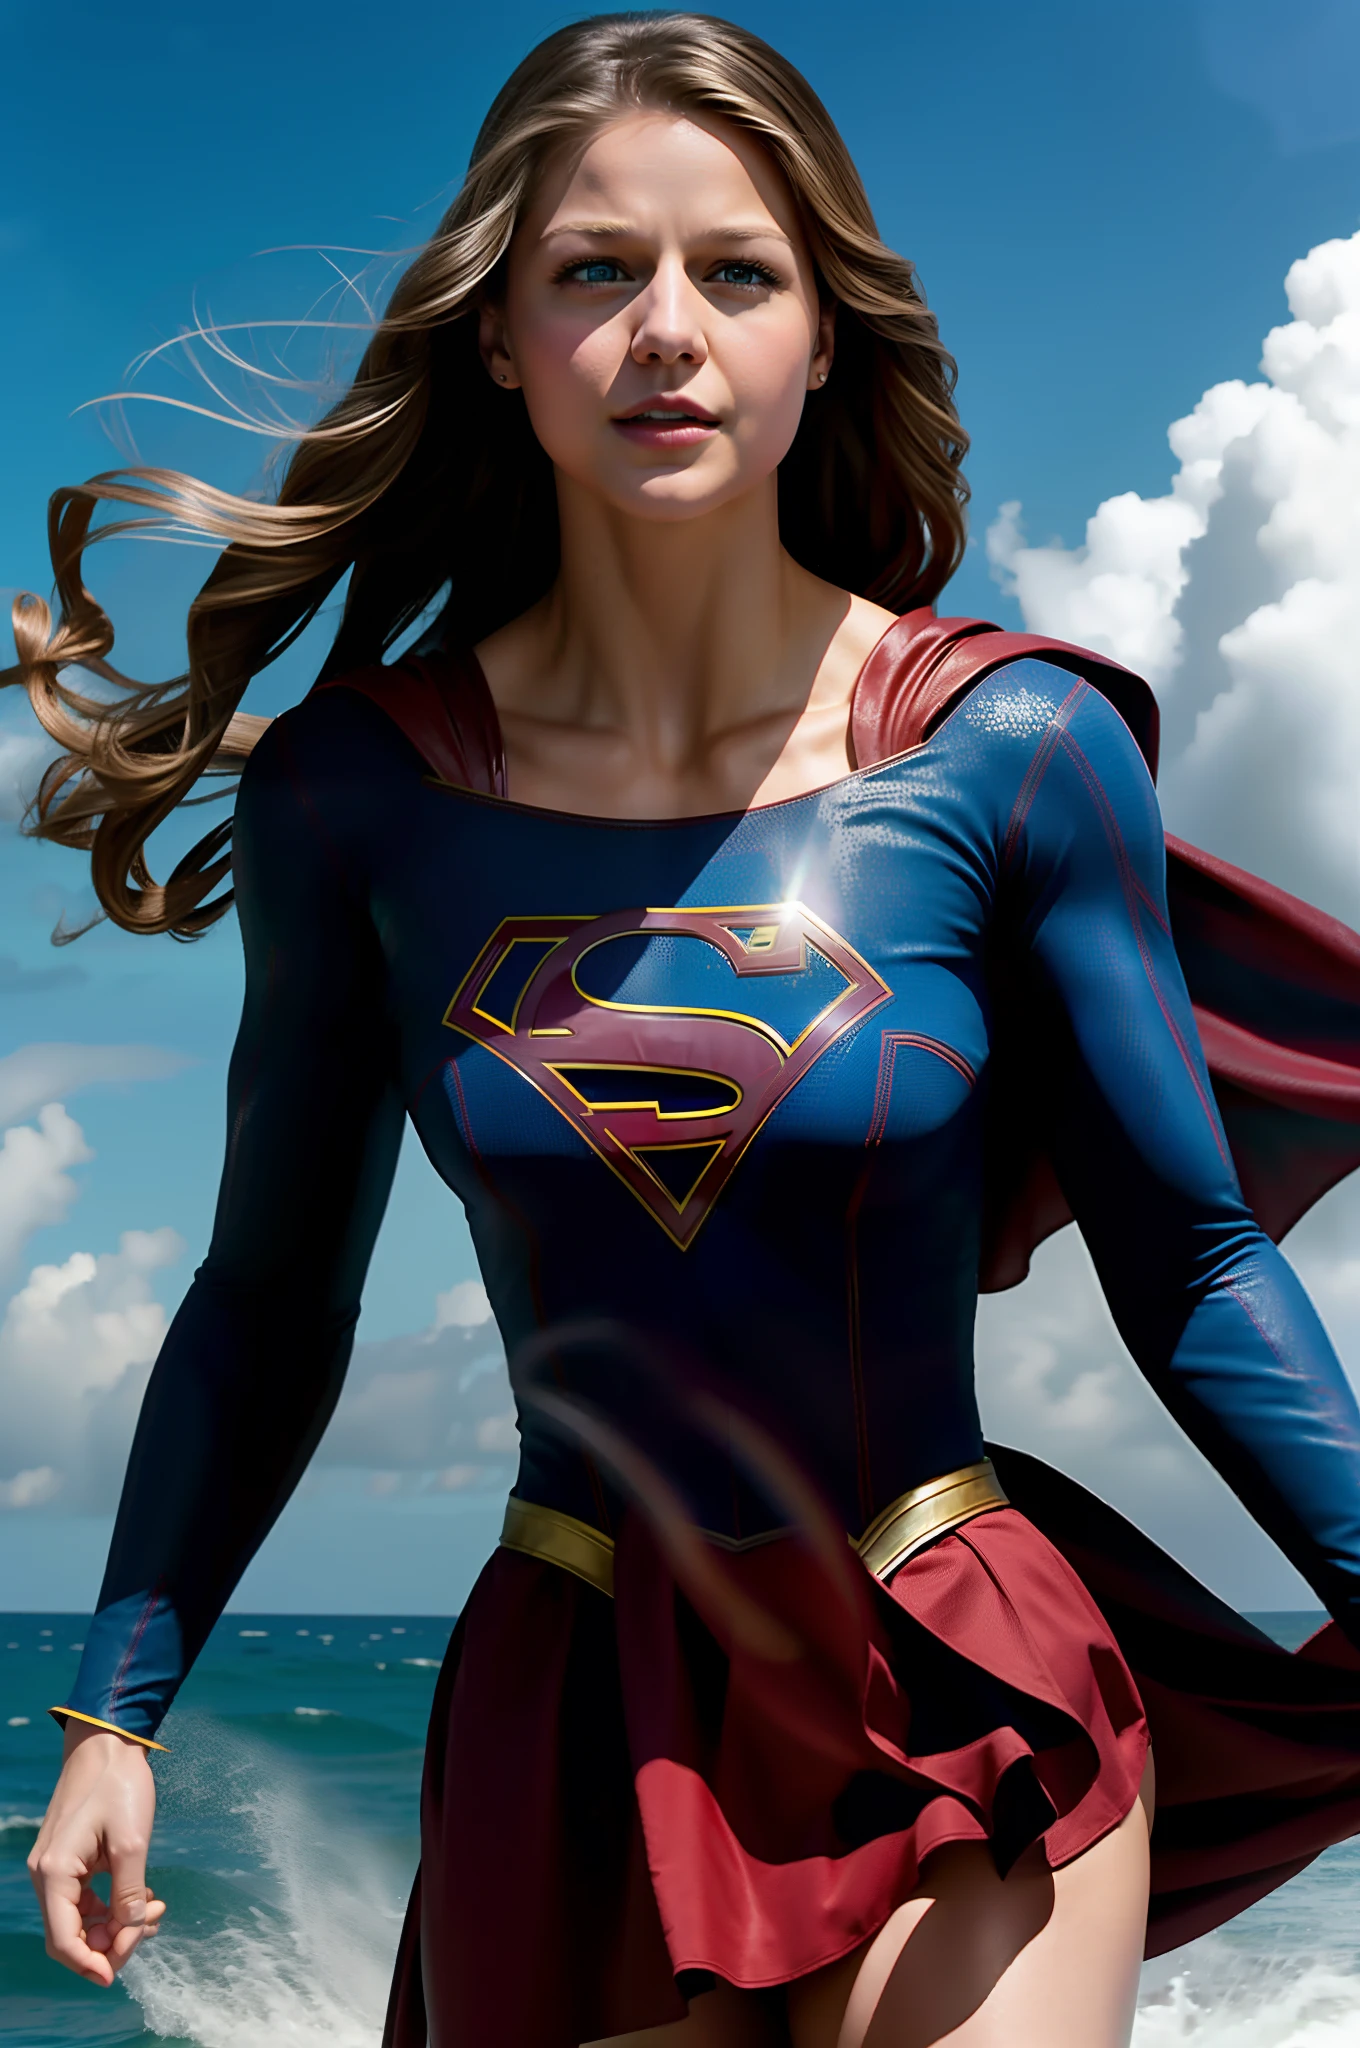 Melissa Benoist als Supergirl mit athletischem Körperbau in einem tropischen Sturm, über dem Meer fliegen